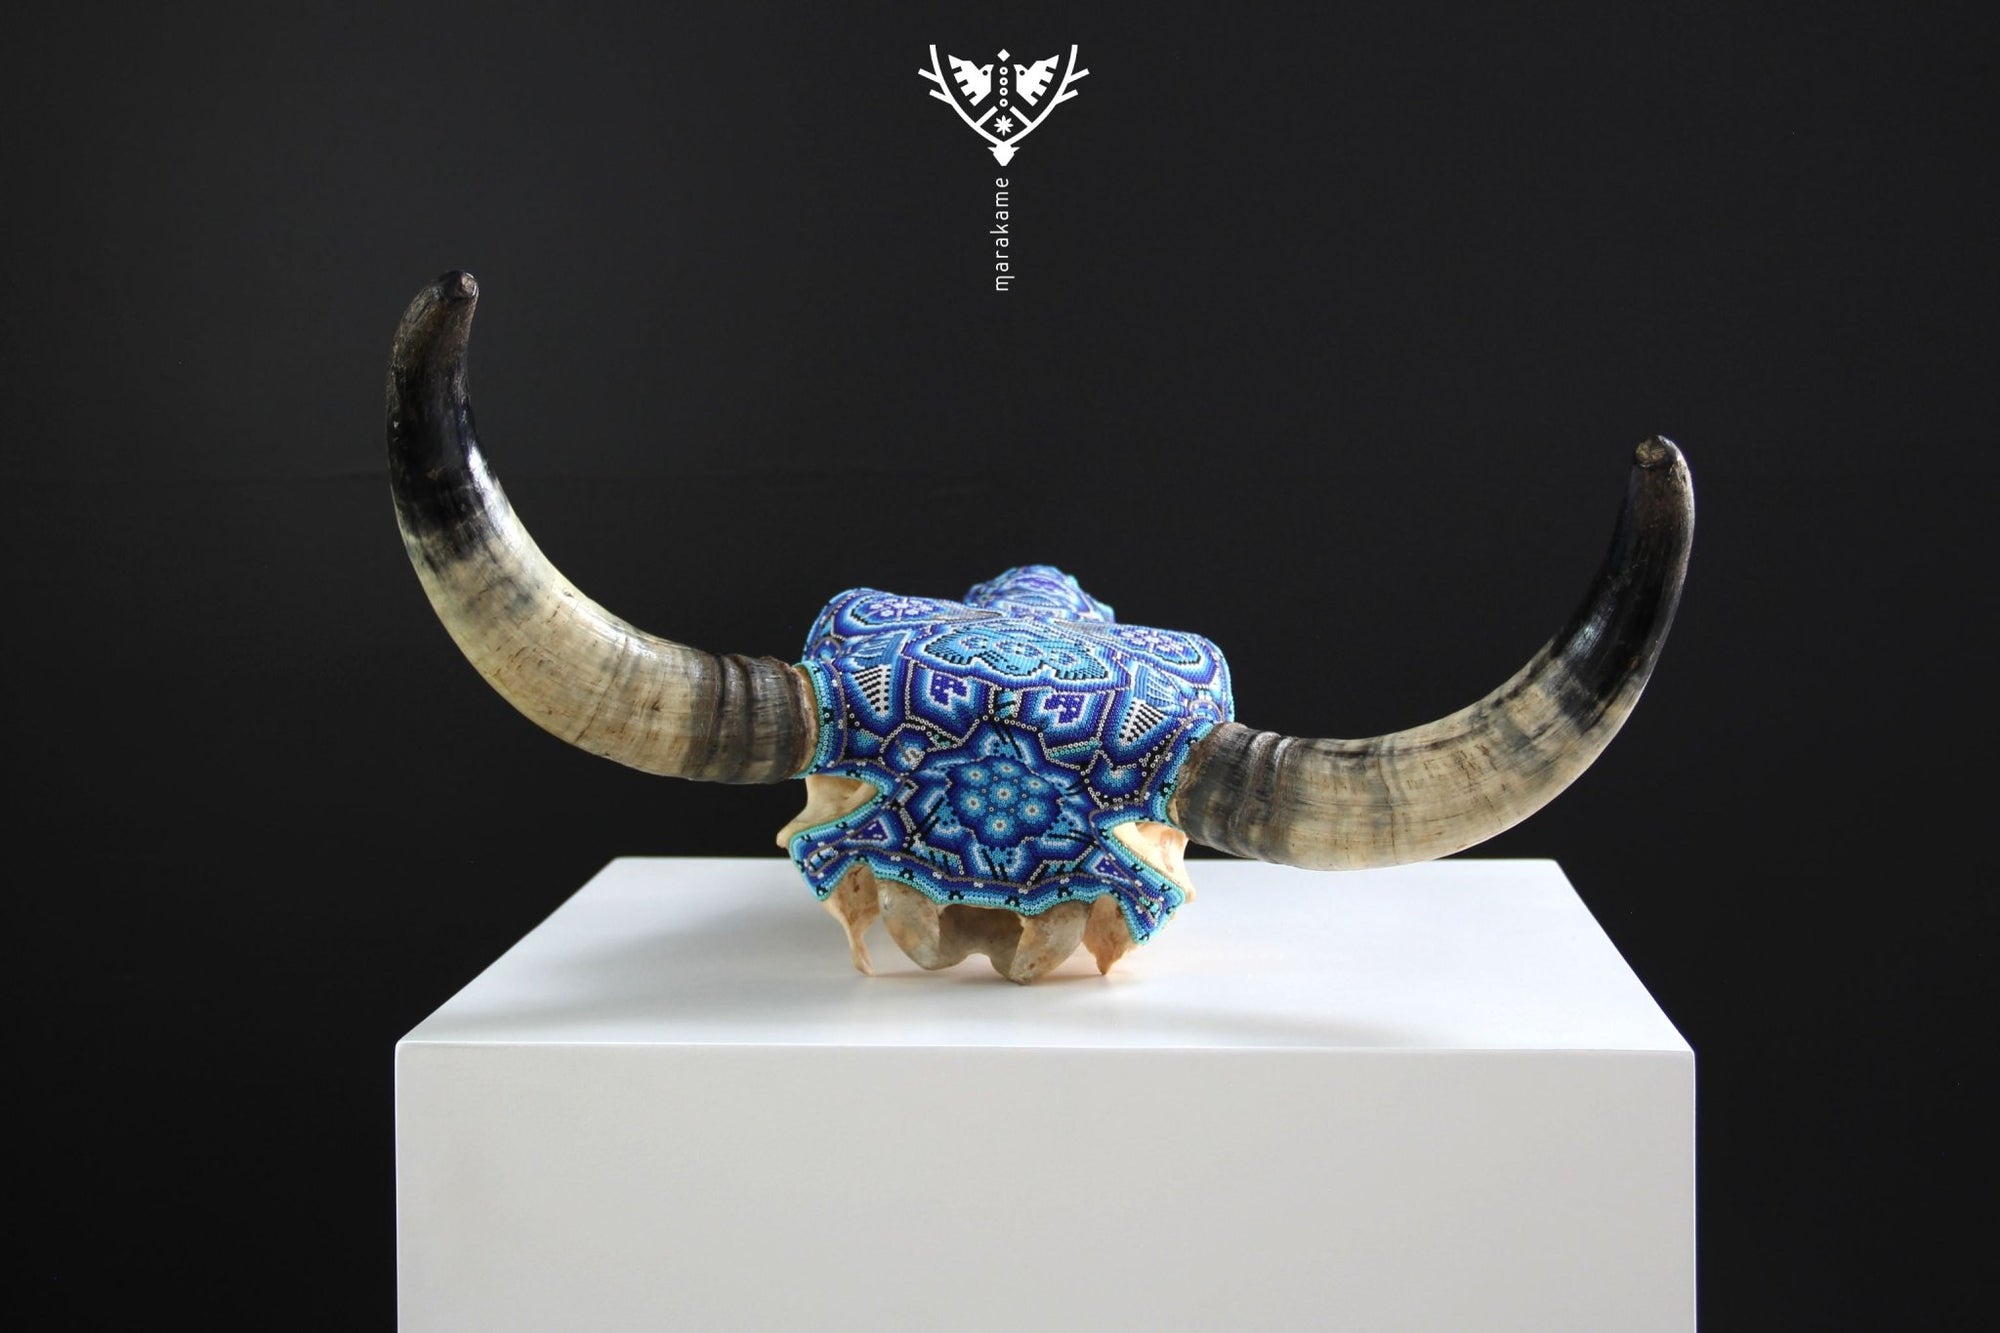 Crâne de vache Huichol Art - Muwieri yuawi - Huichol Art - Marakame